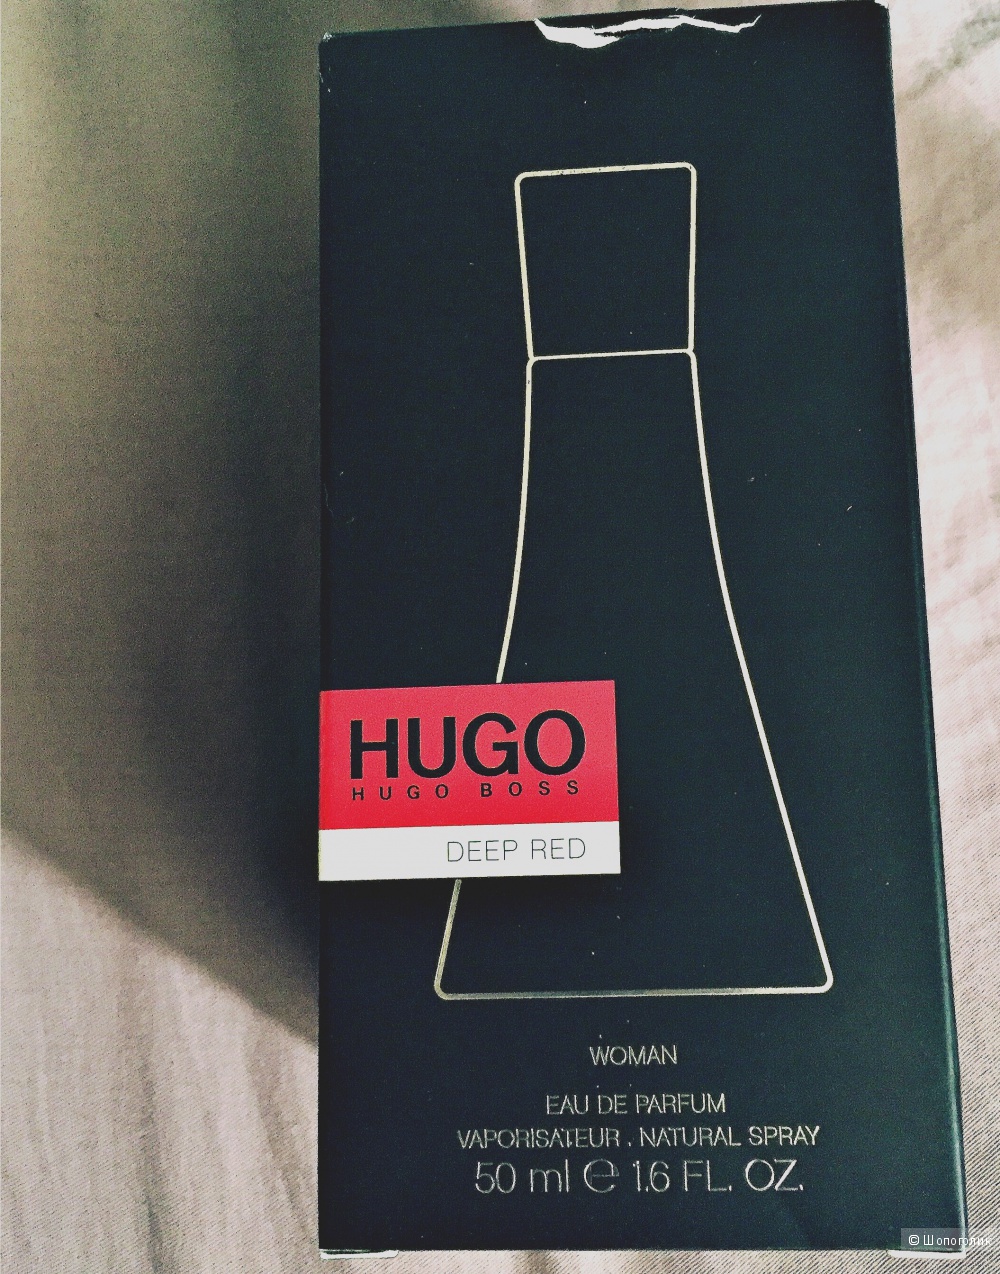 Hugo Boss Deep Red, парфюм вода, 50 мл